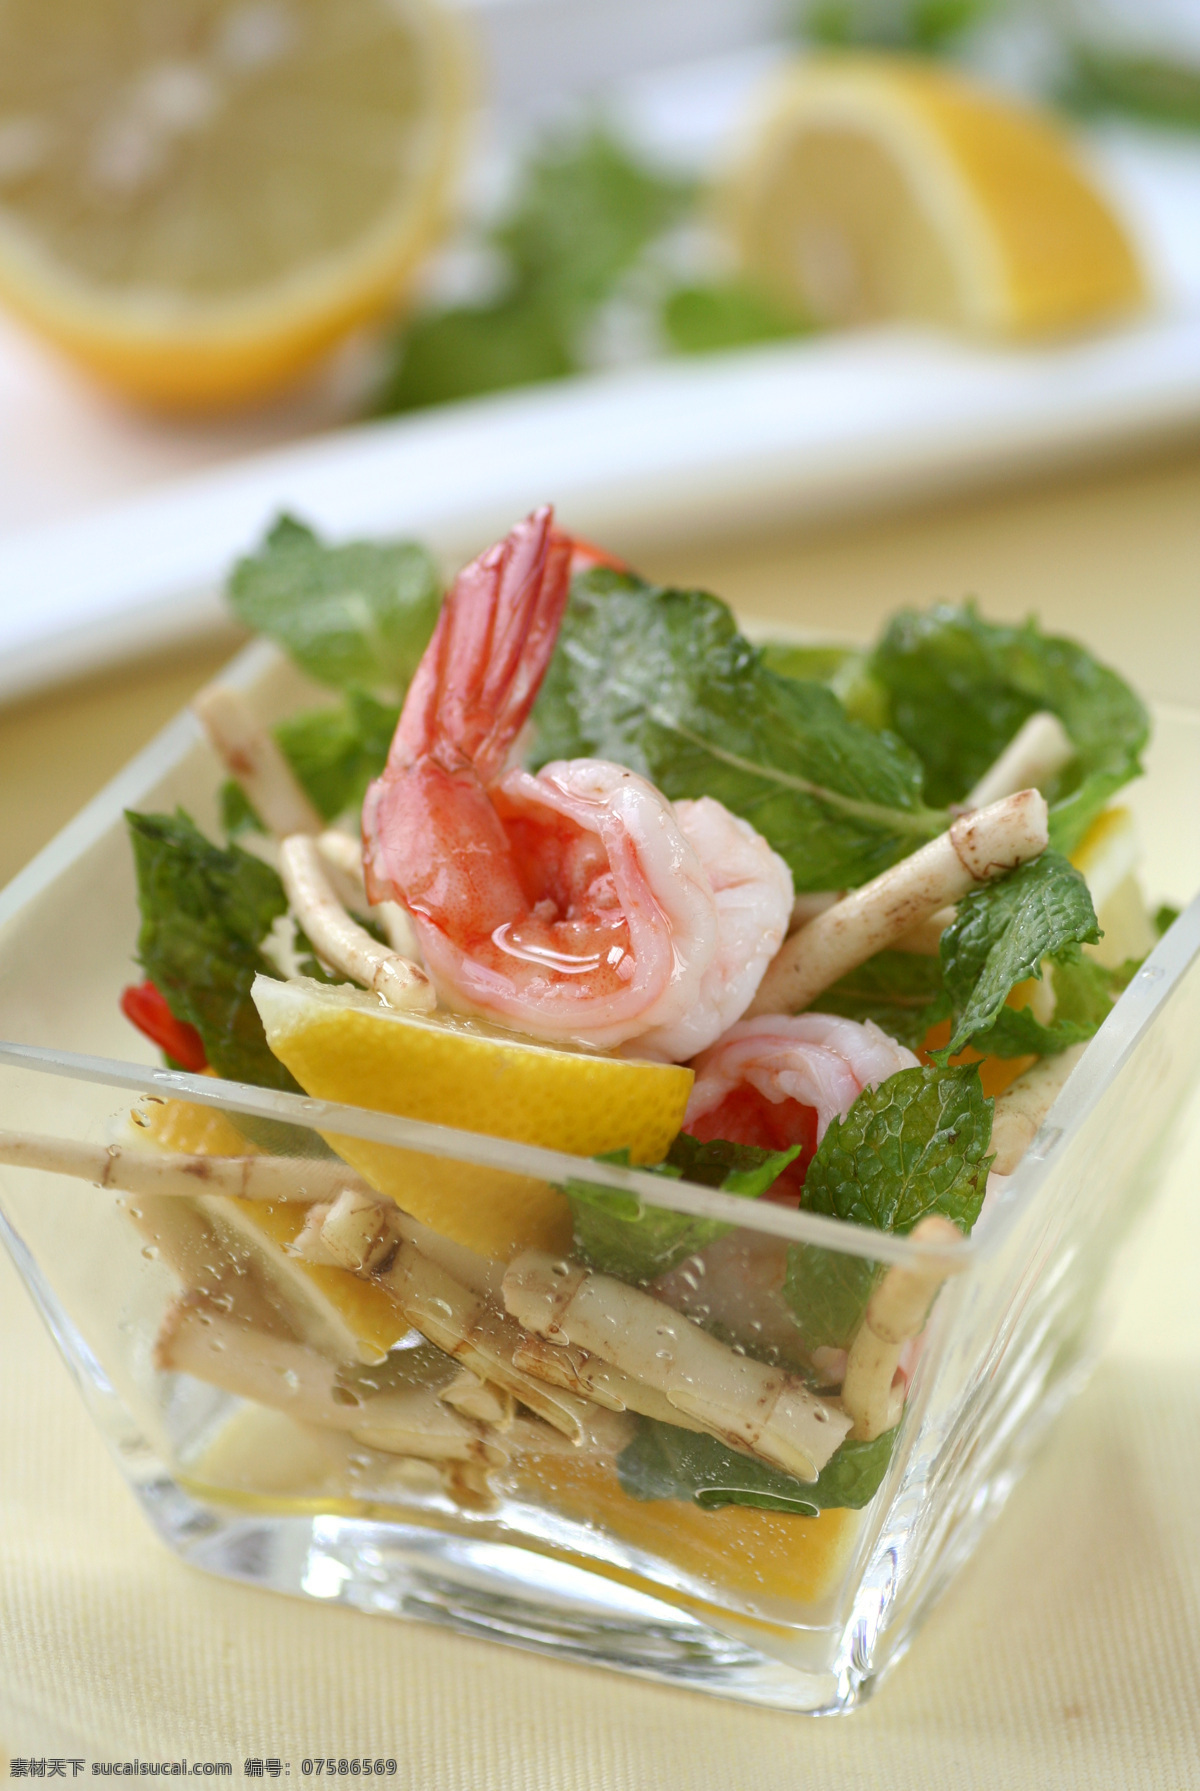 鱼腥草 鲜 虾 沙拉 鲜虾 薄荷叶 柠檬 玻璃餐具 快乐西餐 西餐美食 餐饮美食